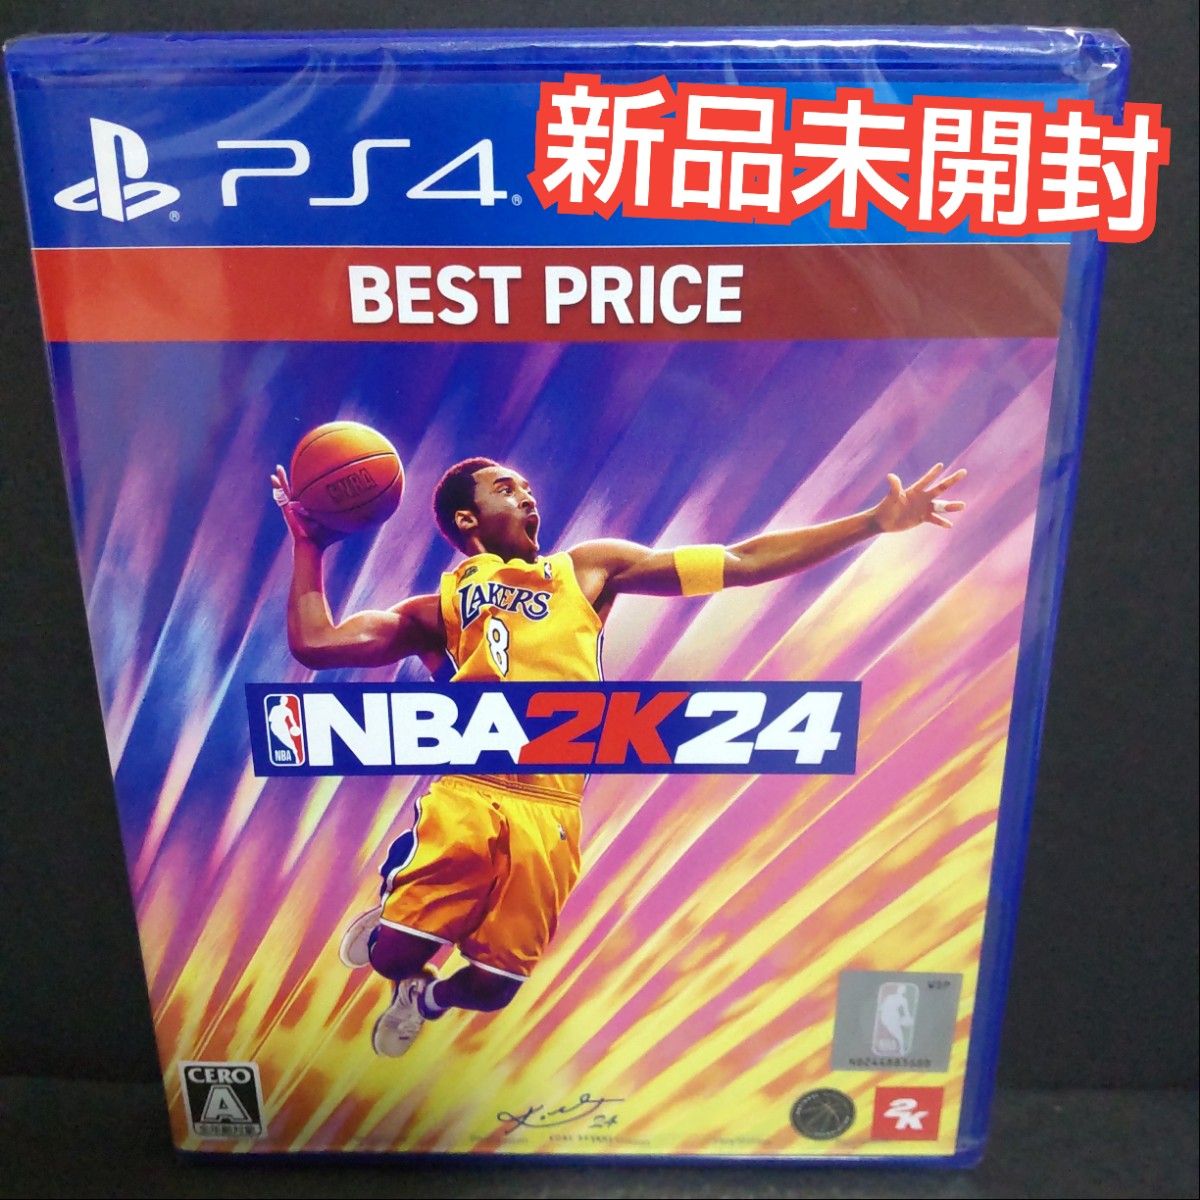 NBA 2k24 BESTPrice PS4 ソフト 新品未開封